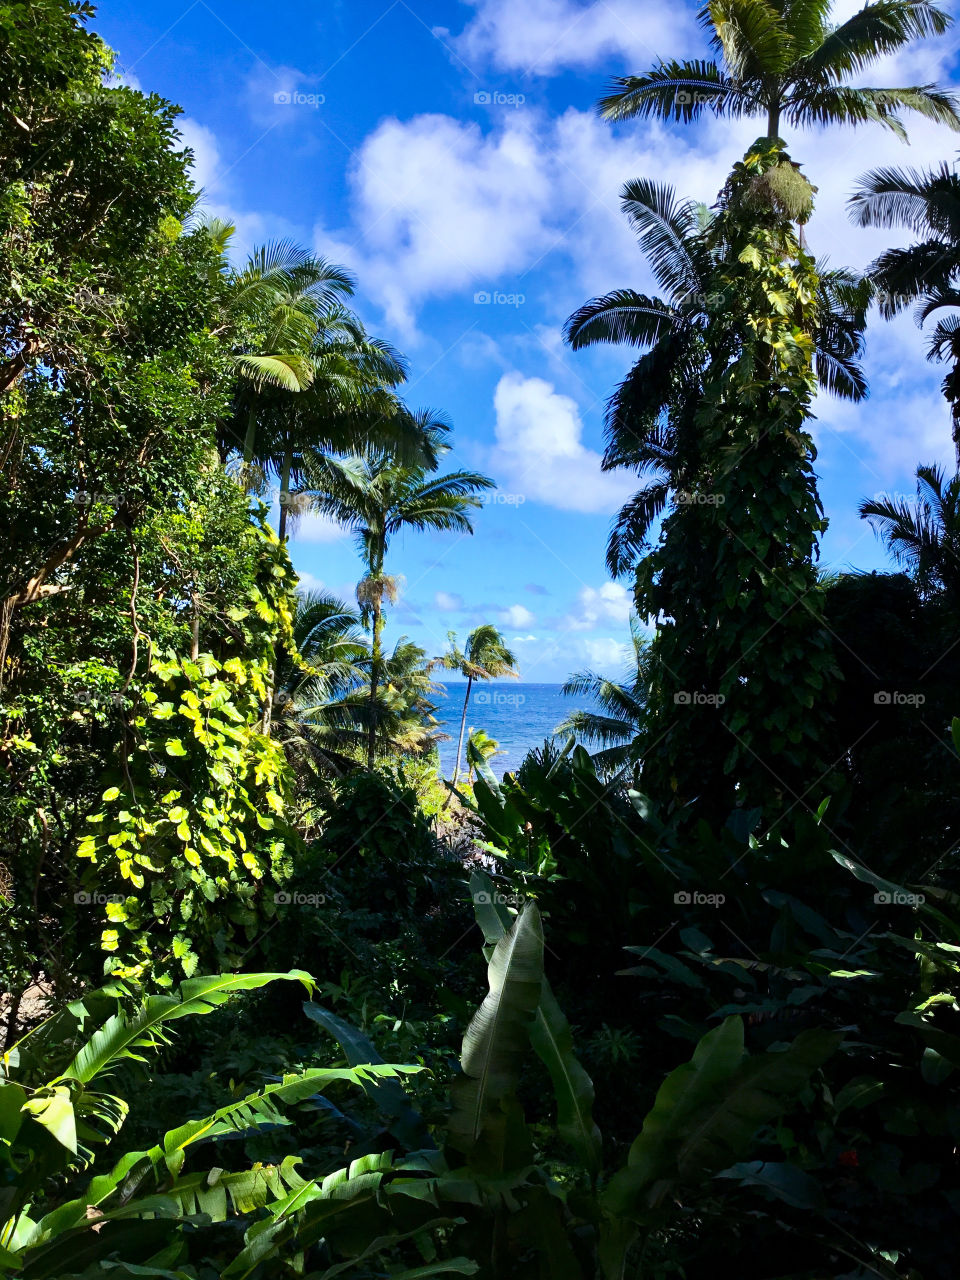 View at Hawaii Tropical Botanical Garden